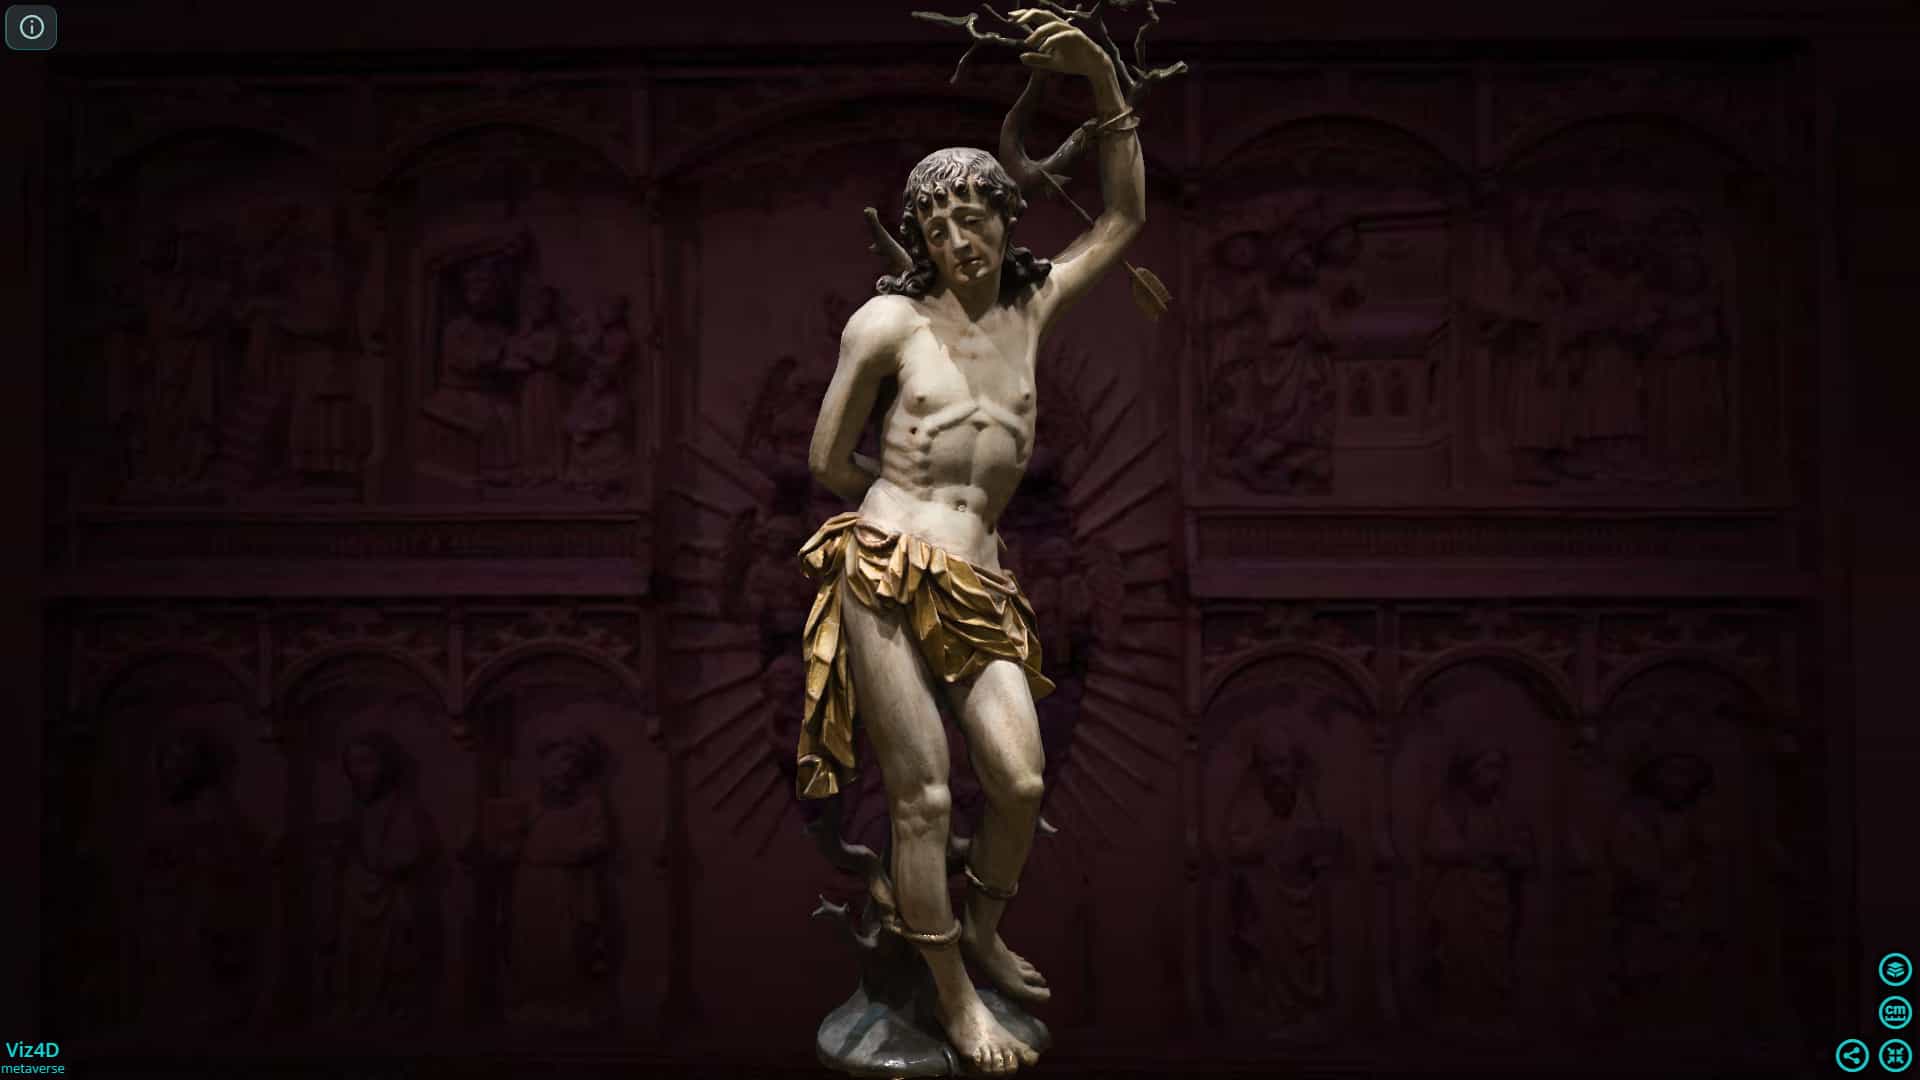 Thánh Sebastian tử vì đạo - Điêu khắc Đức thế kỷ 16.